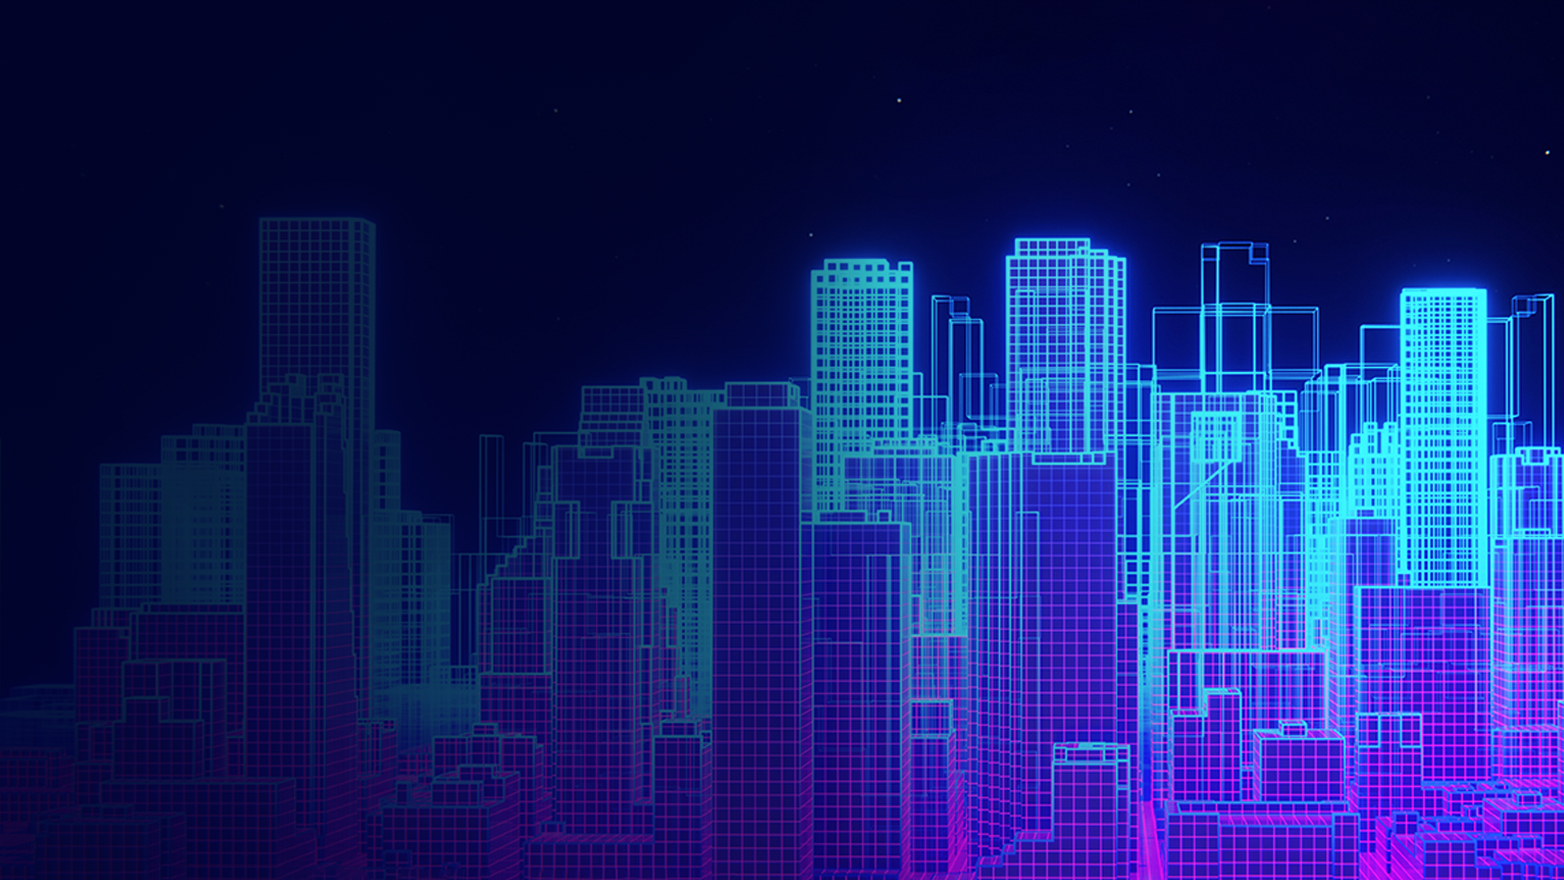 Digital rendering of a city skyline